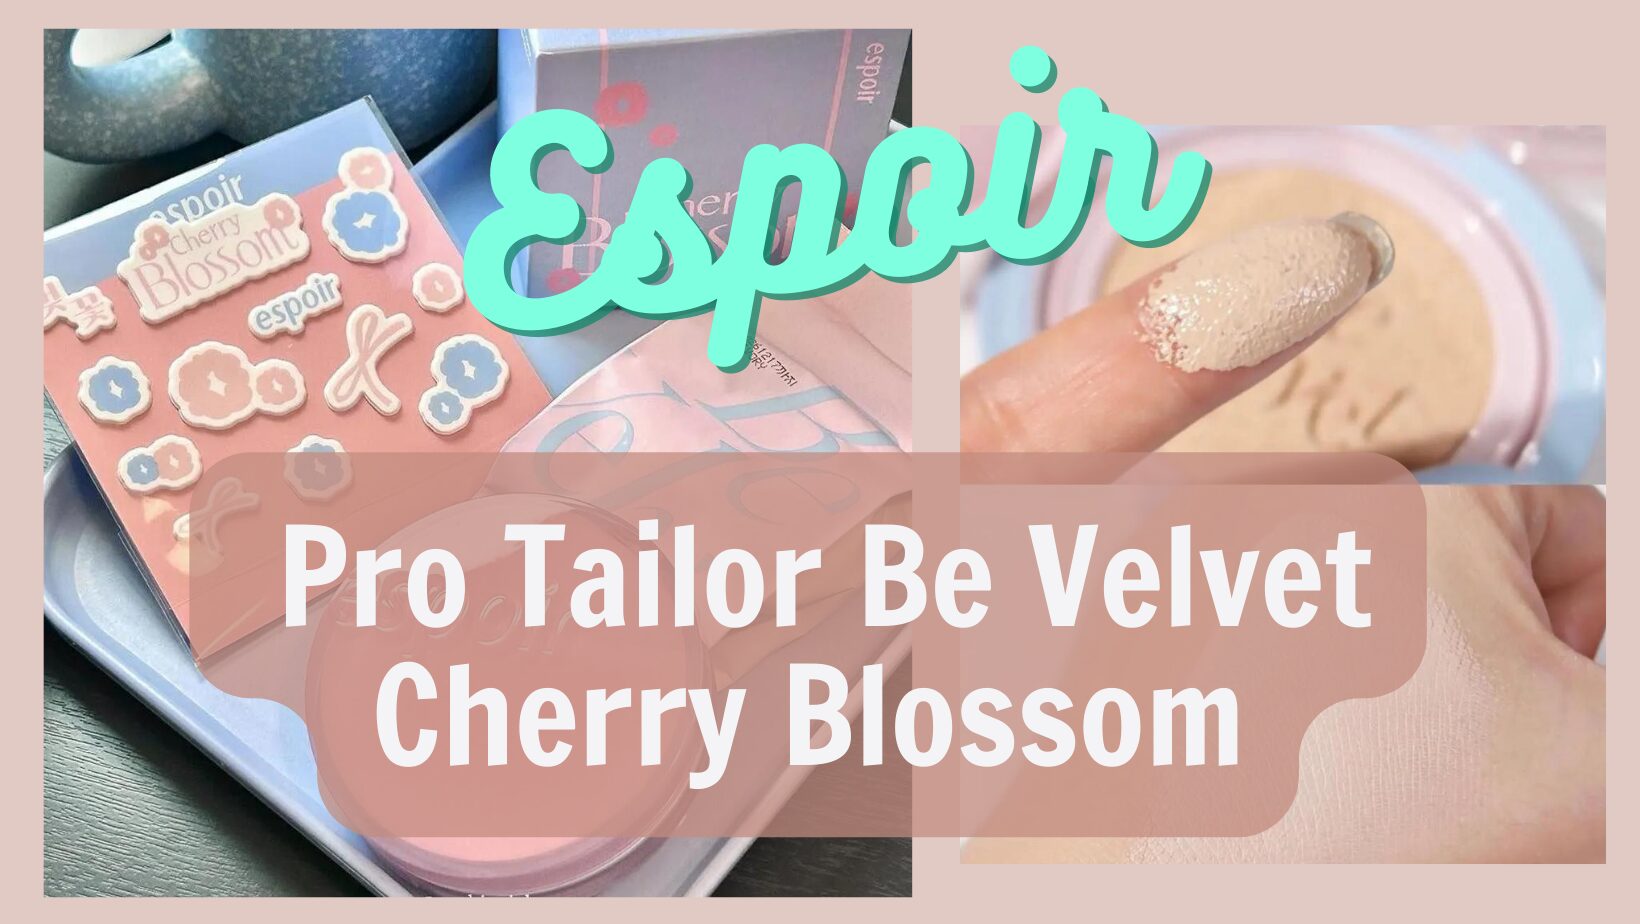 [Review] Cushion Espoir Pro Tailor Be Velvet Cherry Blossom 20